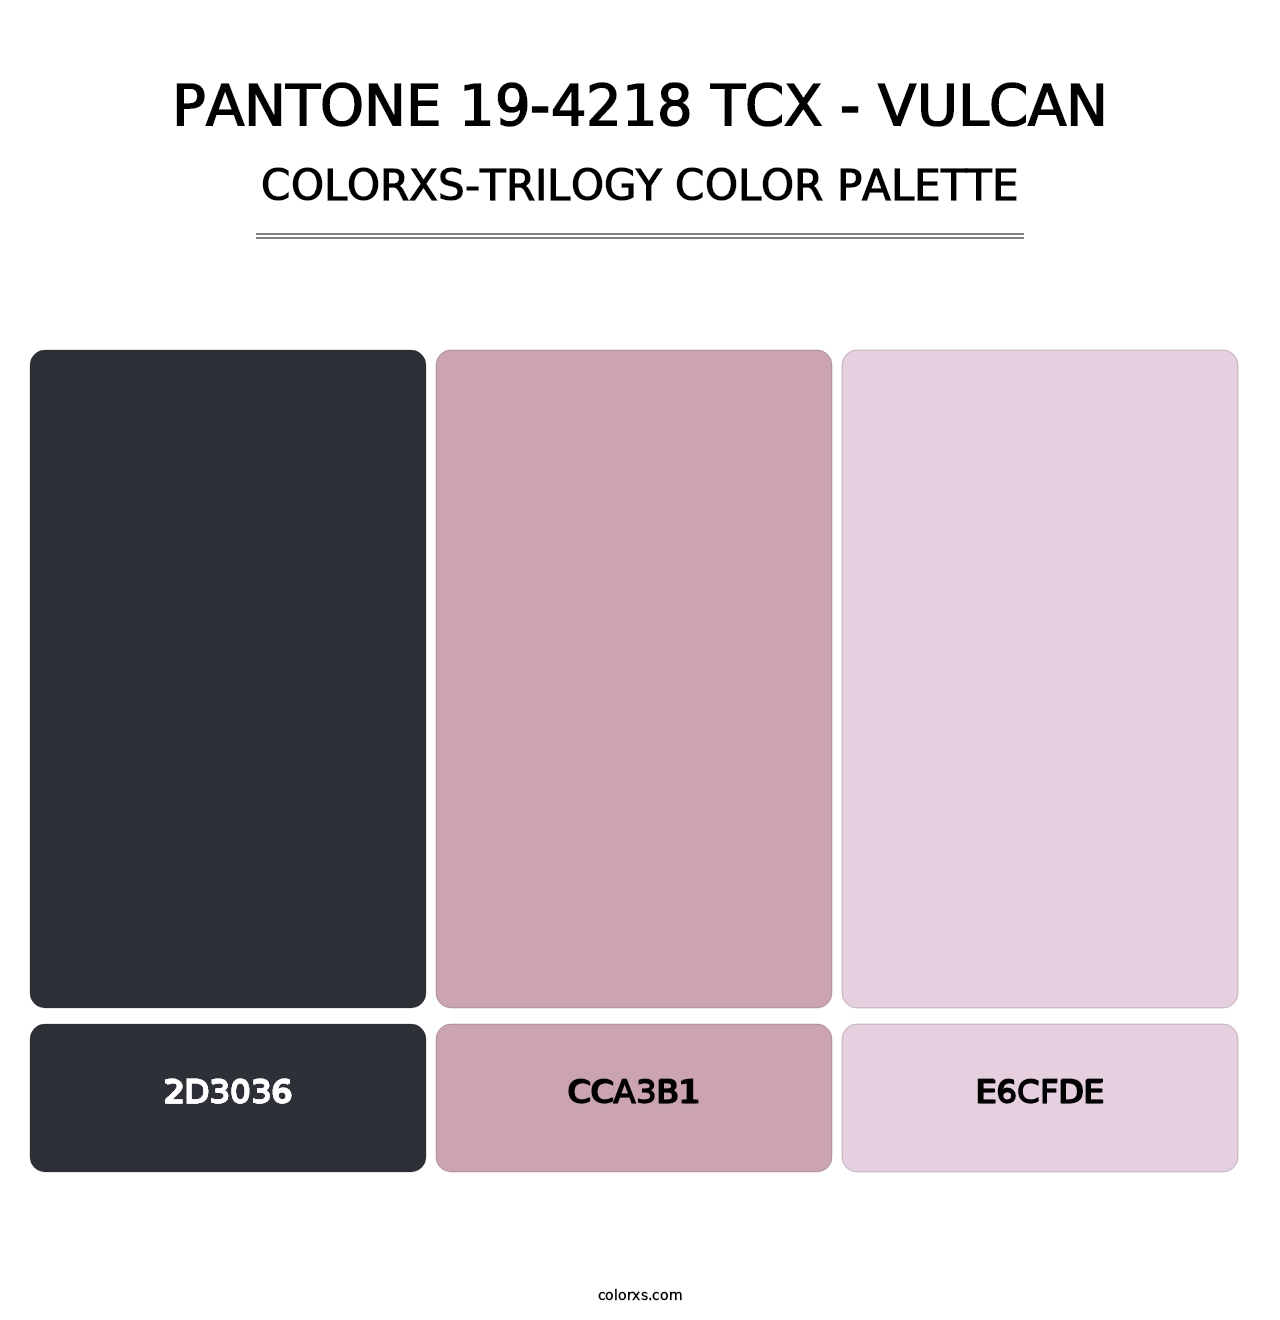 PANTONE 19-4218 TCX - Vulcan - Colorxs Trilogy Palette